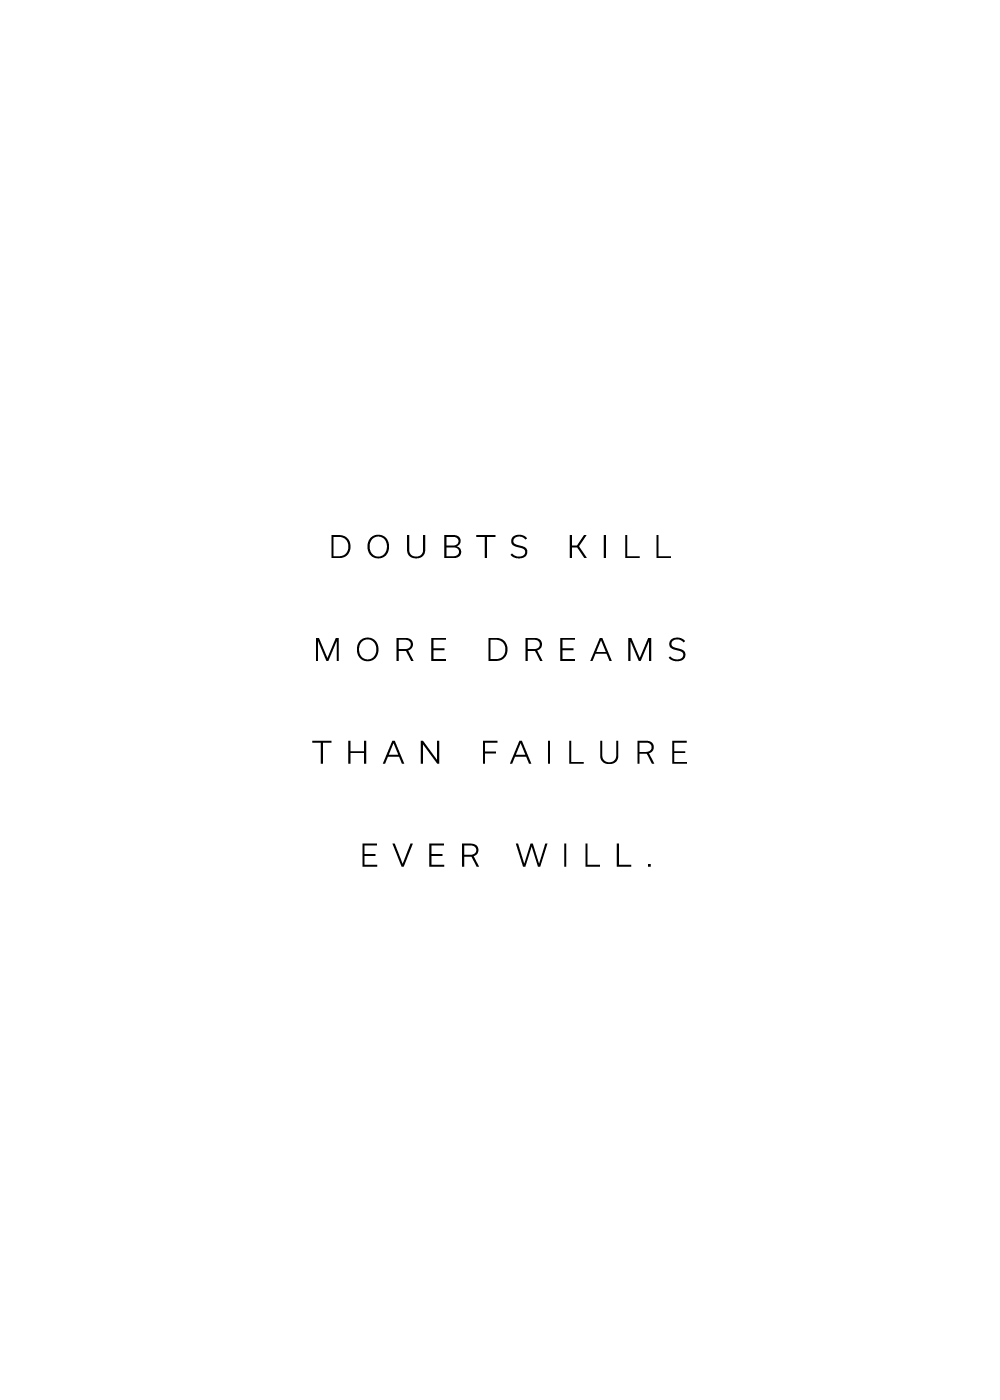 "Doubts kill more dreams than failure ever will" citatplakat